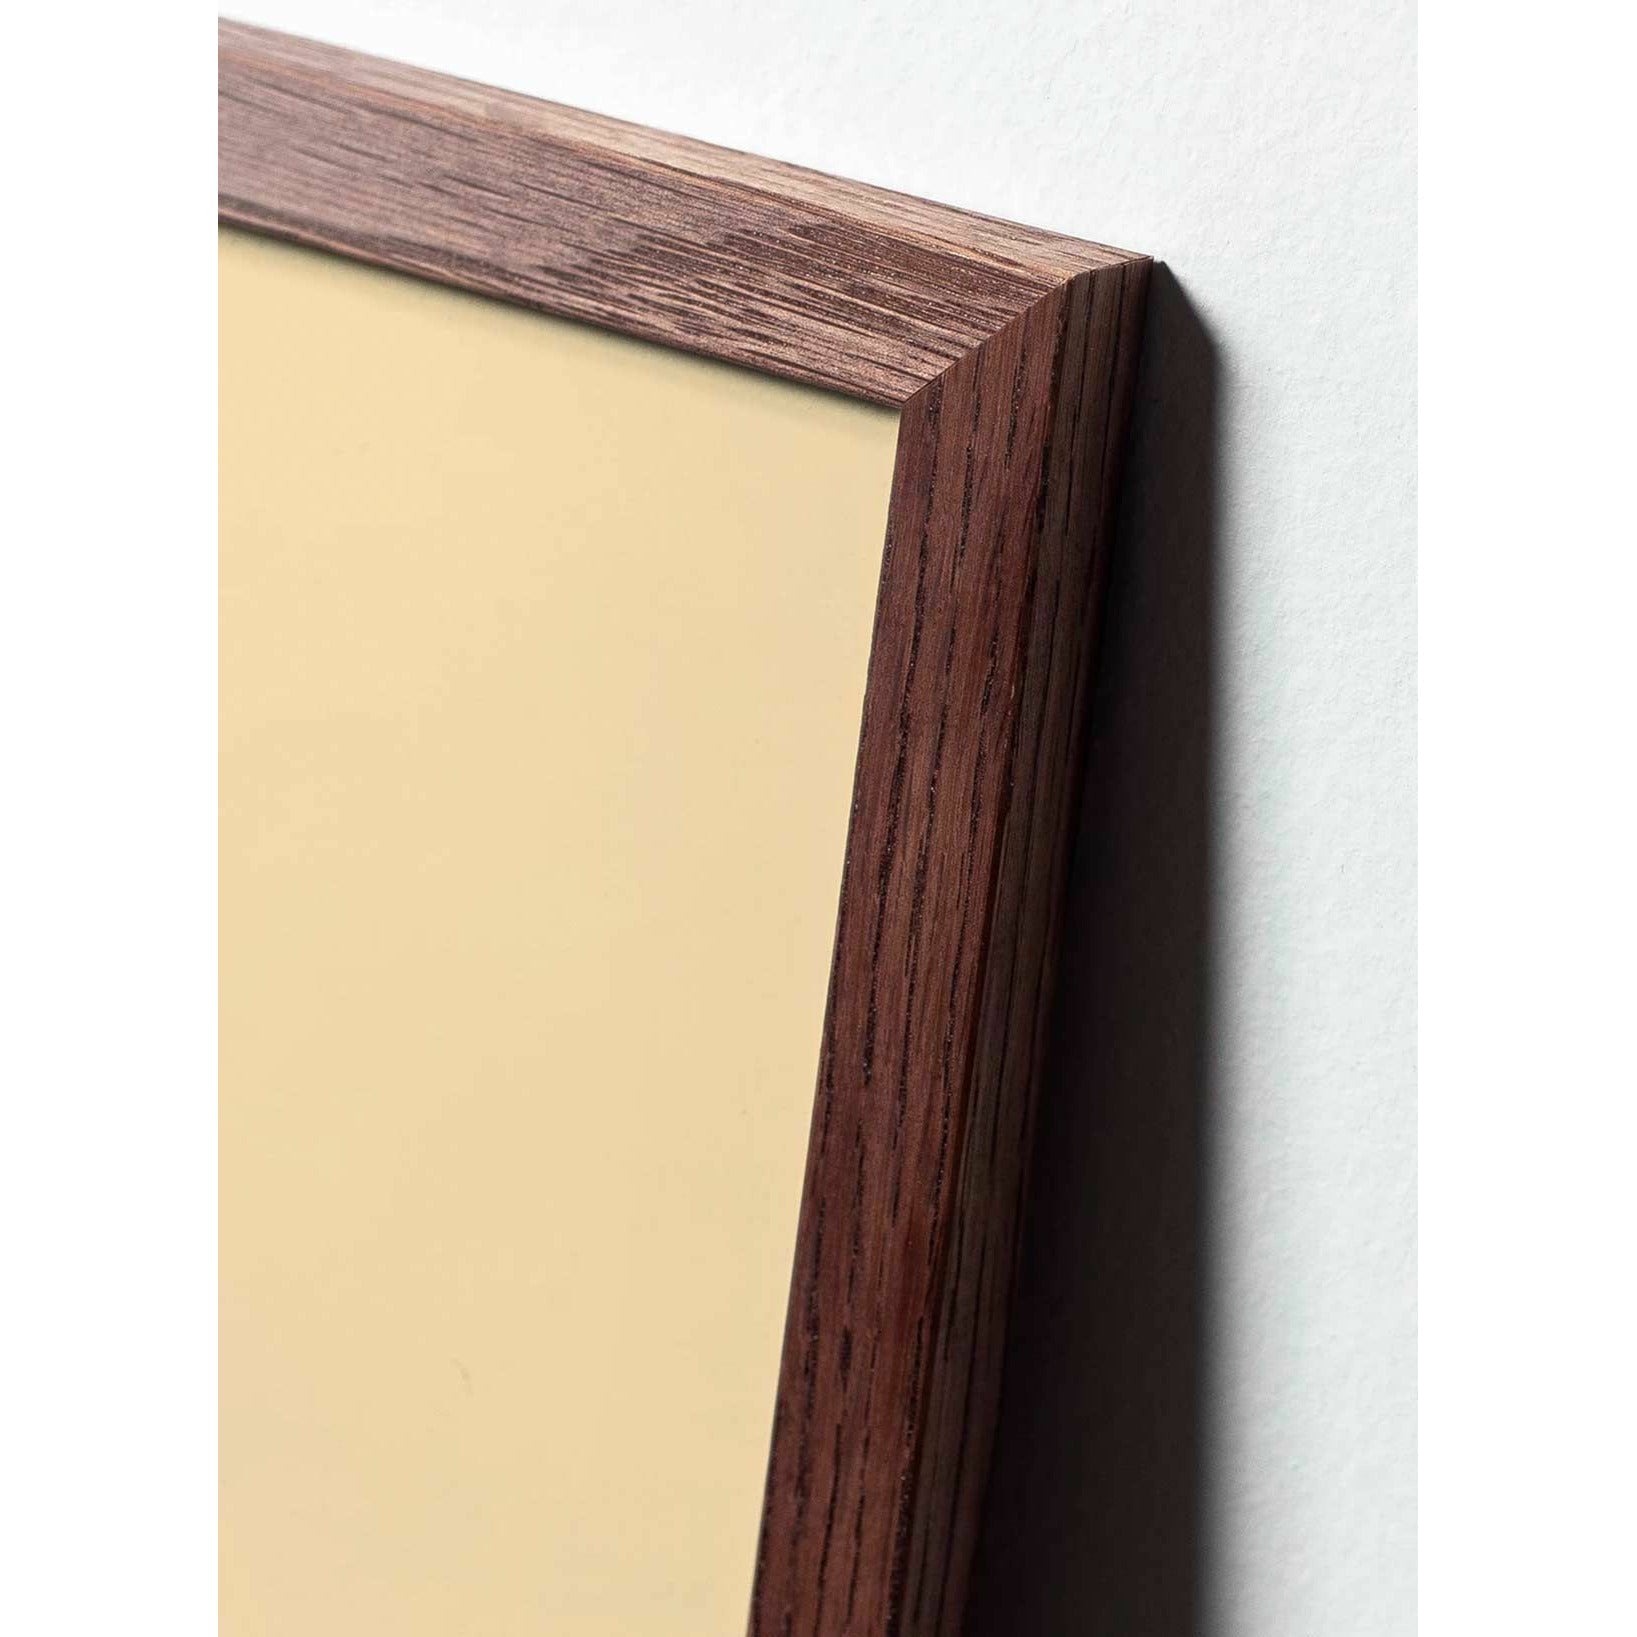 Póster de clip de papel cisne de creación, marco hecho de madera oscura de 30x40 cm, fondo rosa